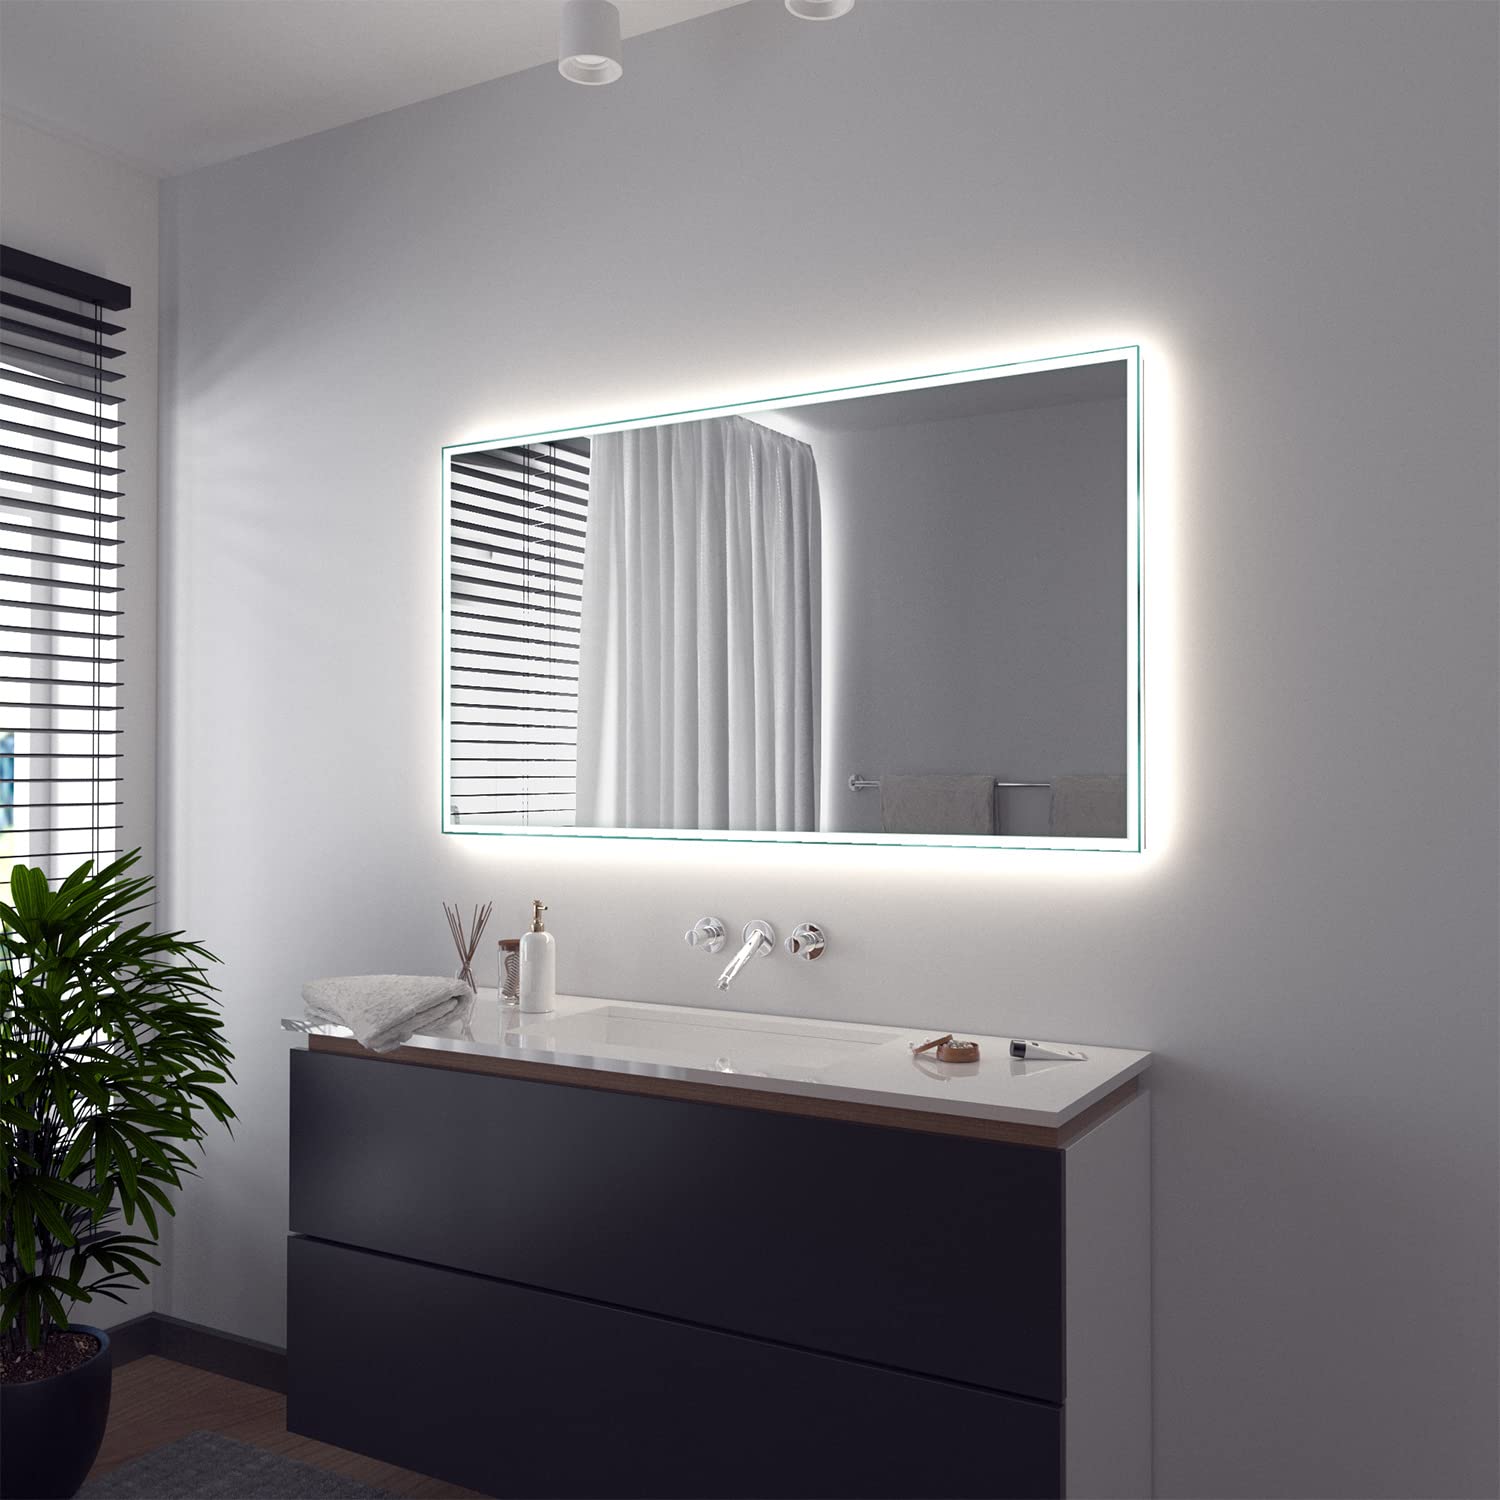 SARAR Wandspiegel mit rundum LED-Beleuchtung 180x80 cm Made in Germany Vittoria eckiger Badspiegel Spiegel mit Beleuchtung Badezimmerspiegel